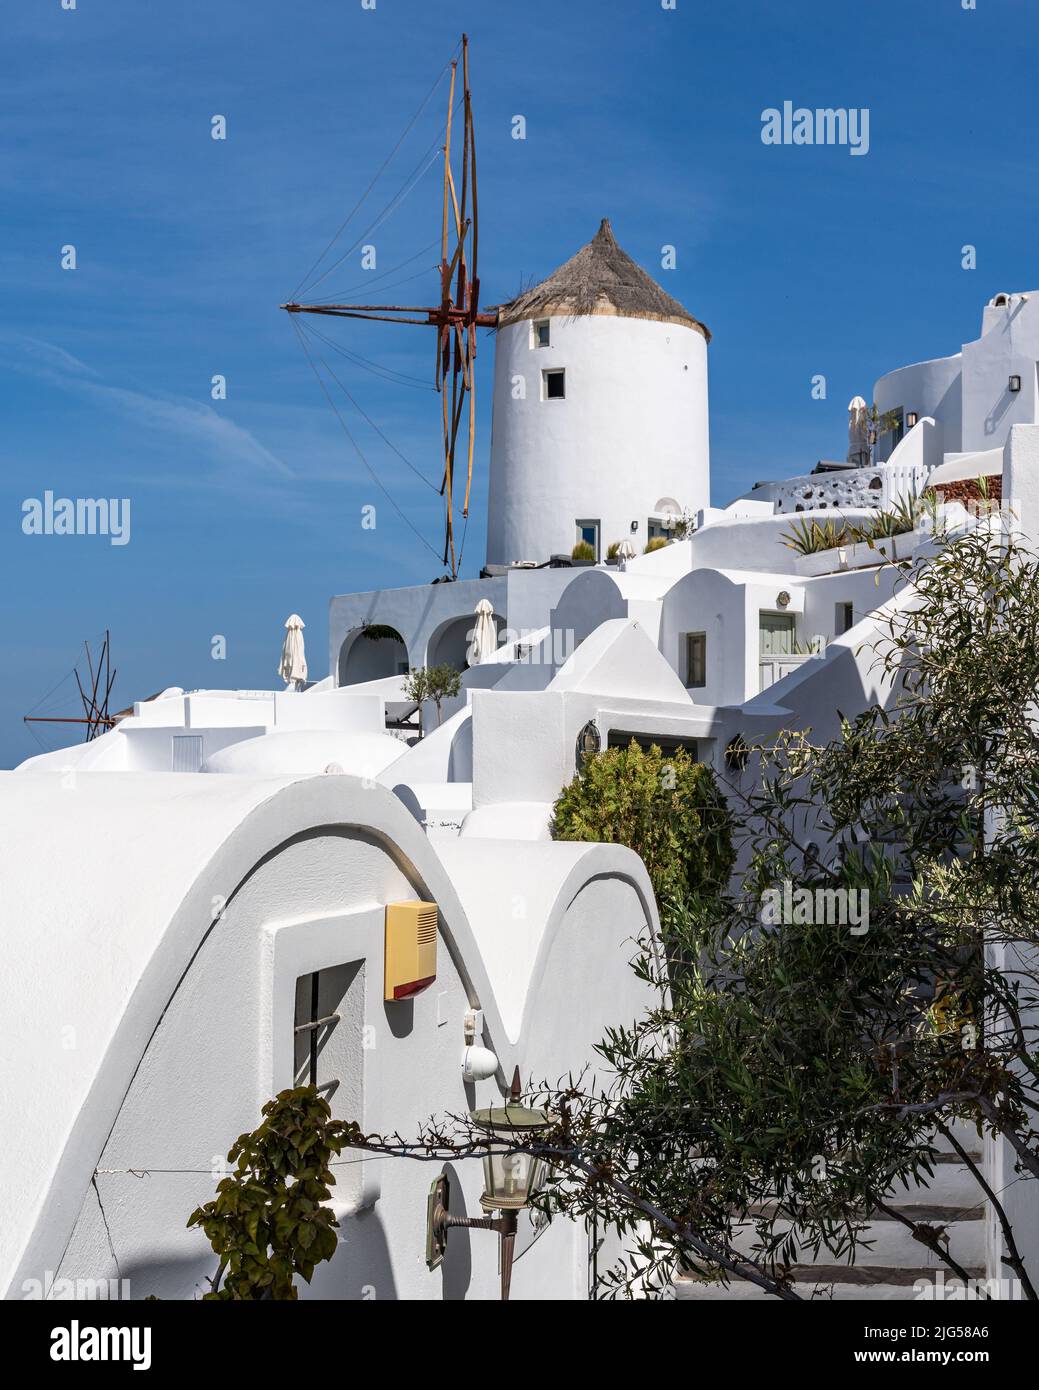 Iconico mulino a vento bianco nel villaggio di Oia, Santorini, Grecia Foto Stock